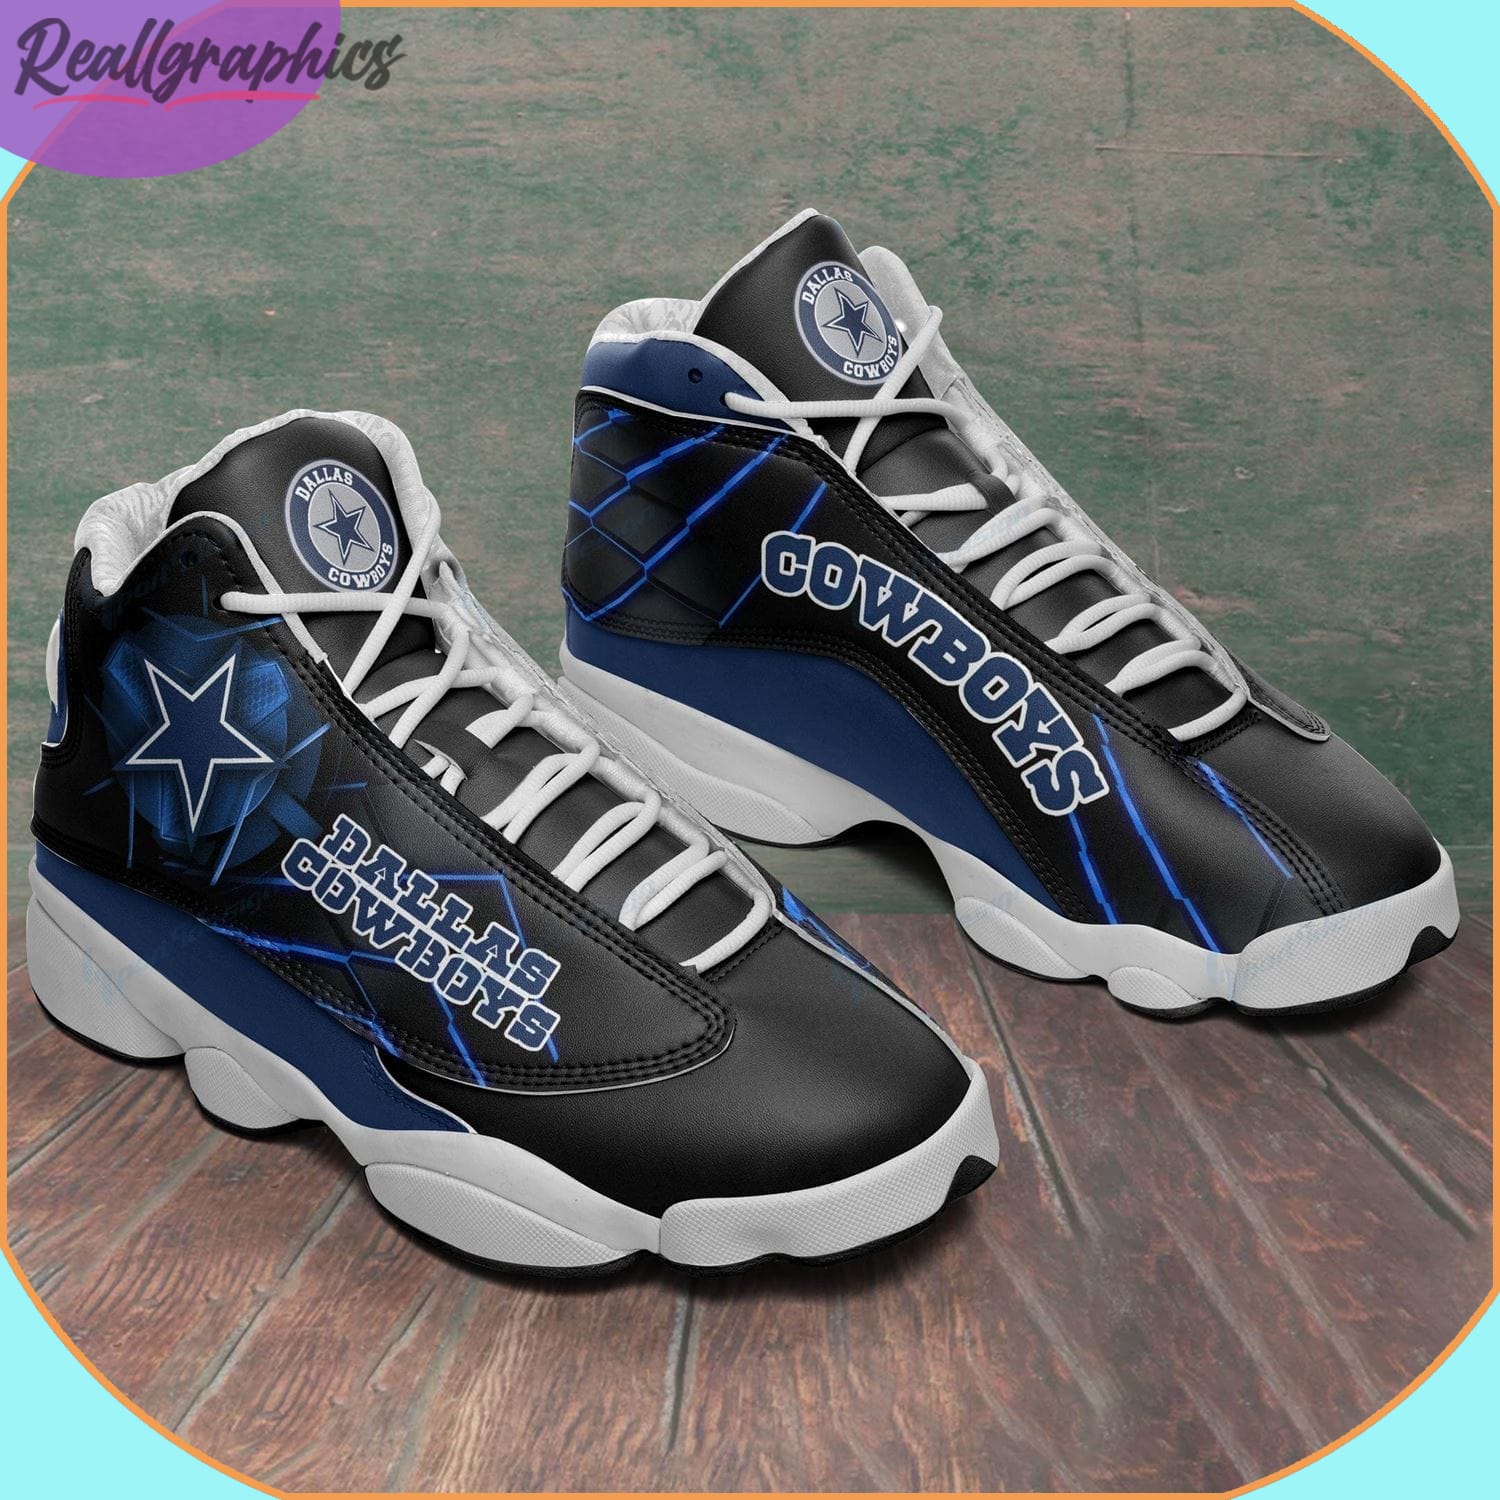 Dallas Cowboys Air Jordan 13 Sneaker, Cowboys NFL Shoes - Reallgraphics